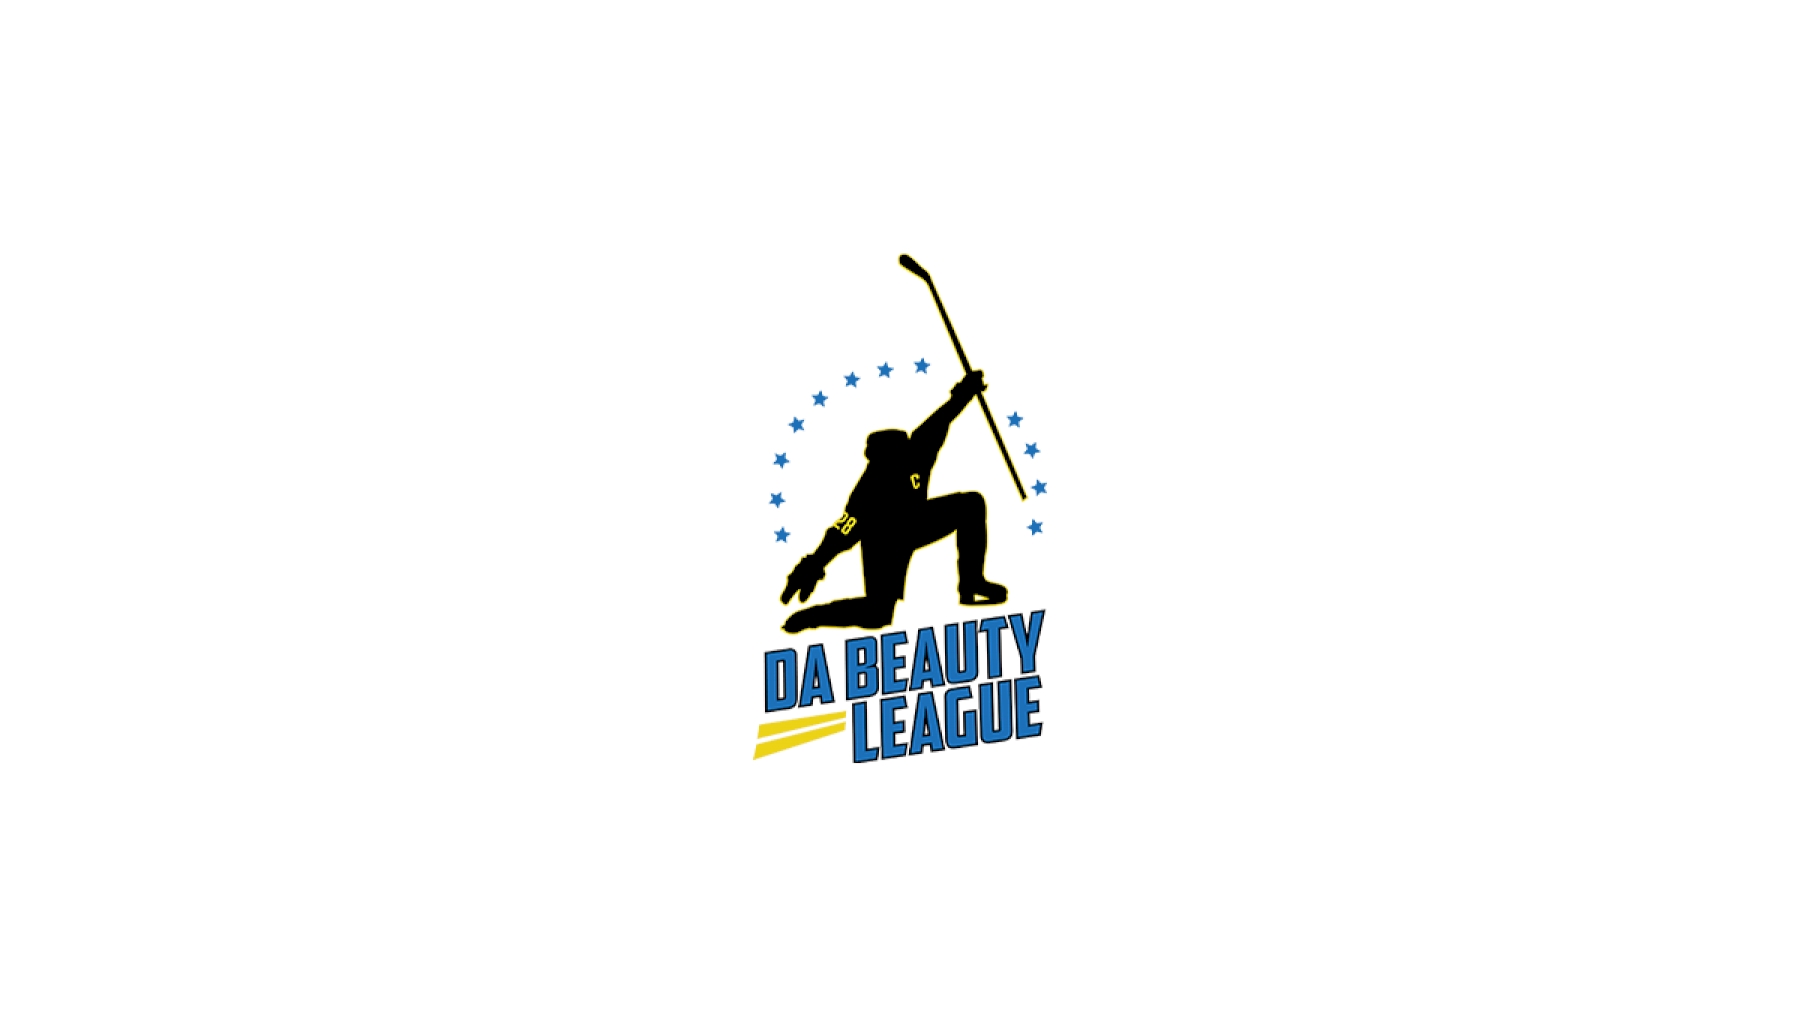 Da Beauty League FloHockey Hockey